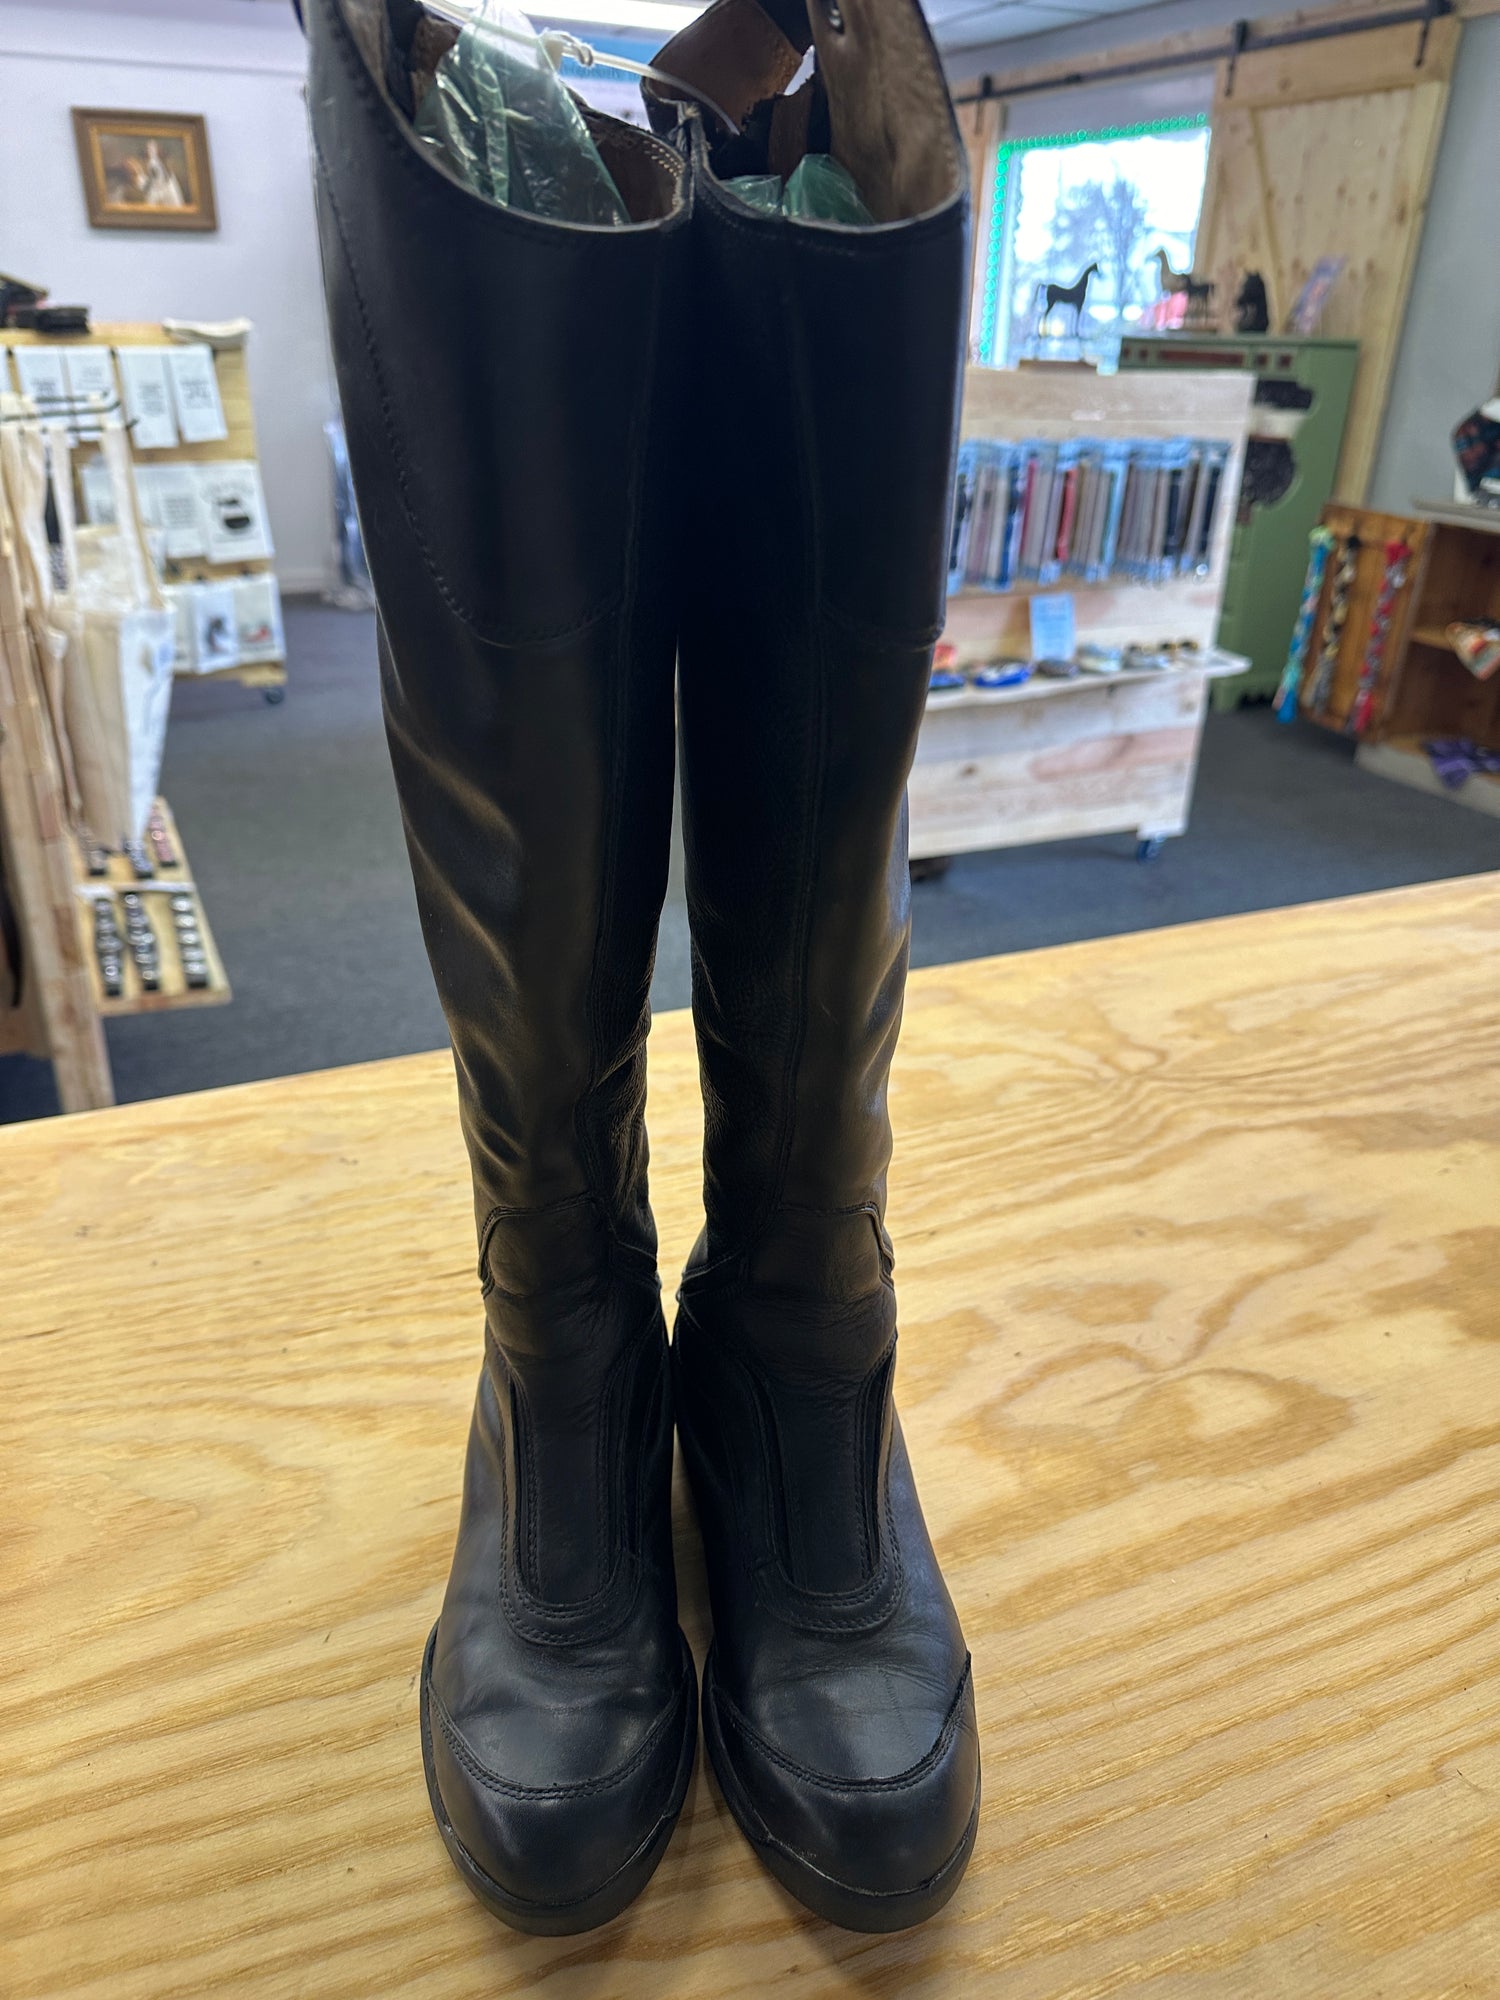 Women's Field Boots, Tall Black Ariats - Size 6.5